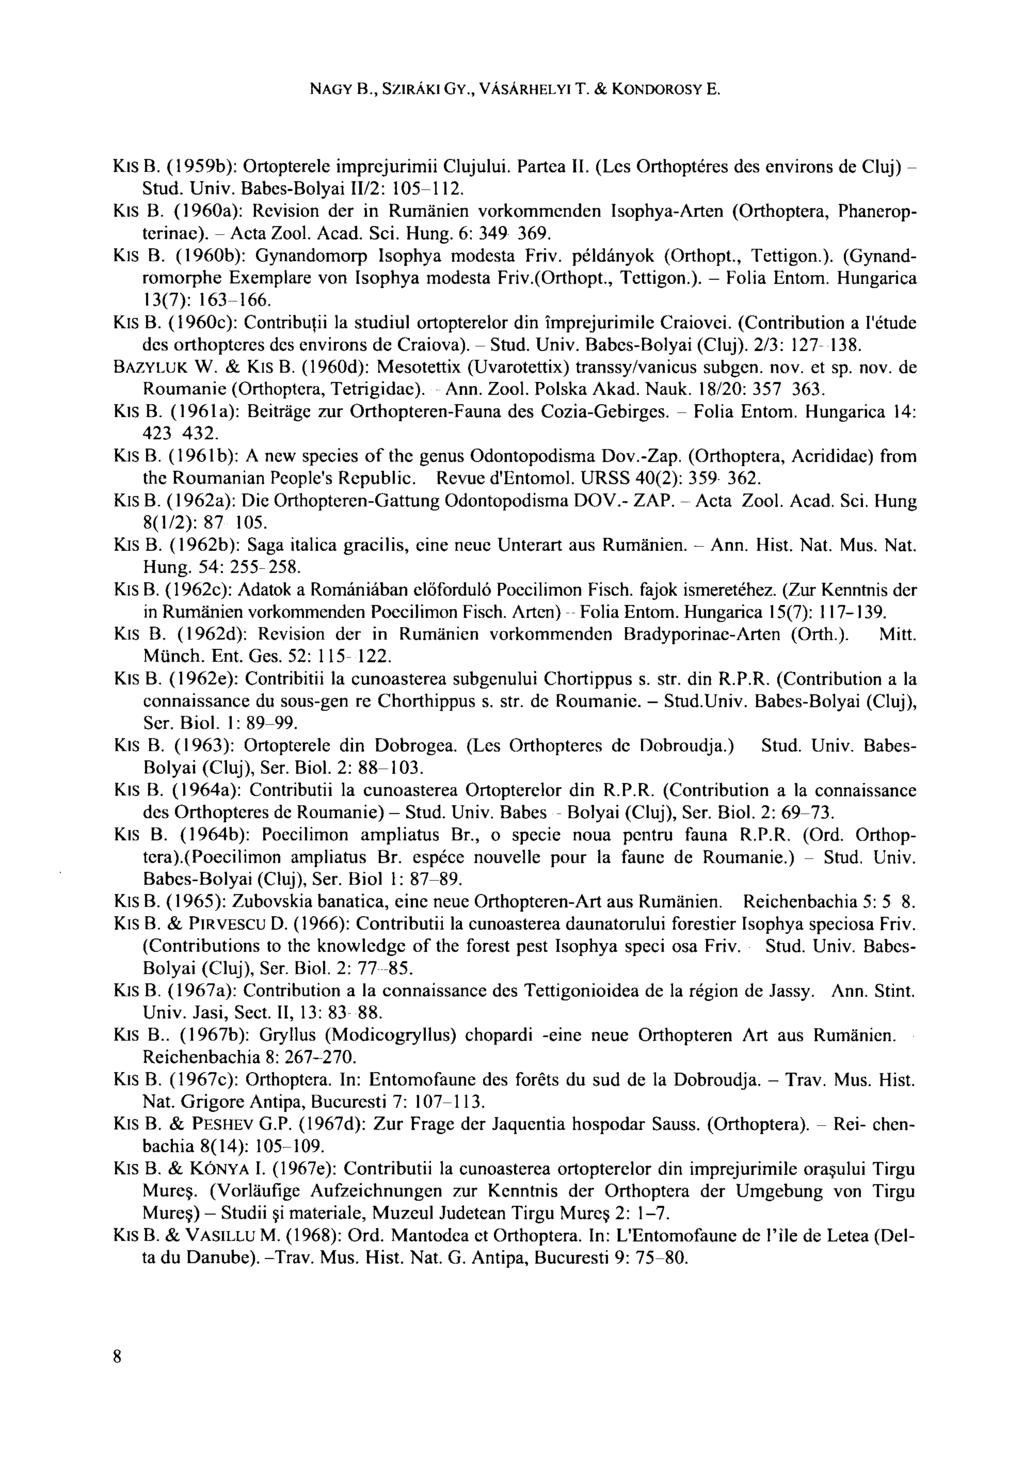 NAGY В., SZIRÁKI GY., VÁSÁRHELYI T. & KONDOROSY E. KIS B. (1959b): Ortopterele imprejurimii Clujului. Partea II. (Les Orthoptéres des environs de Cluj) Stud. Univ. Babes-Bolyai II/2: 105-112. Kis B.